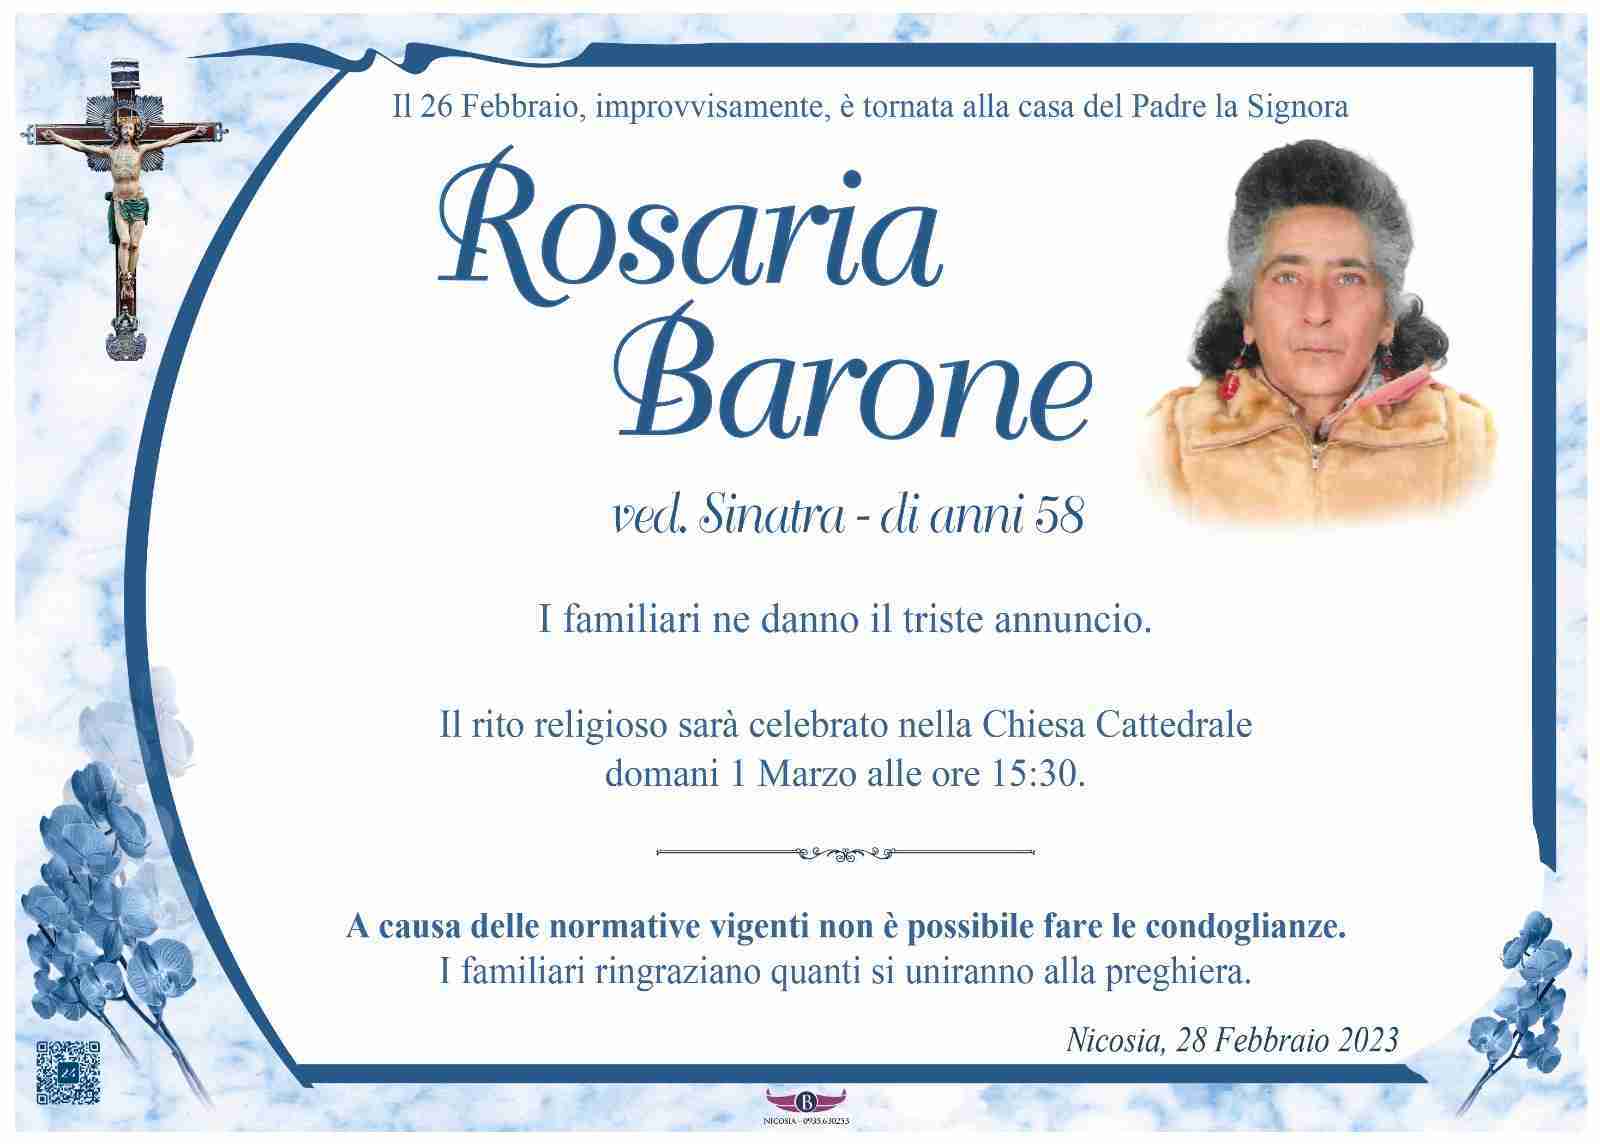 Rosaria Barone